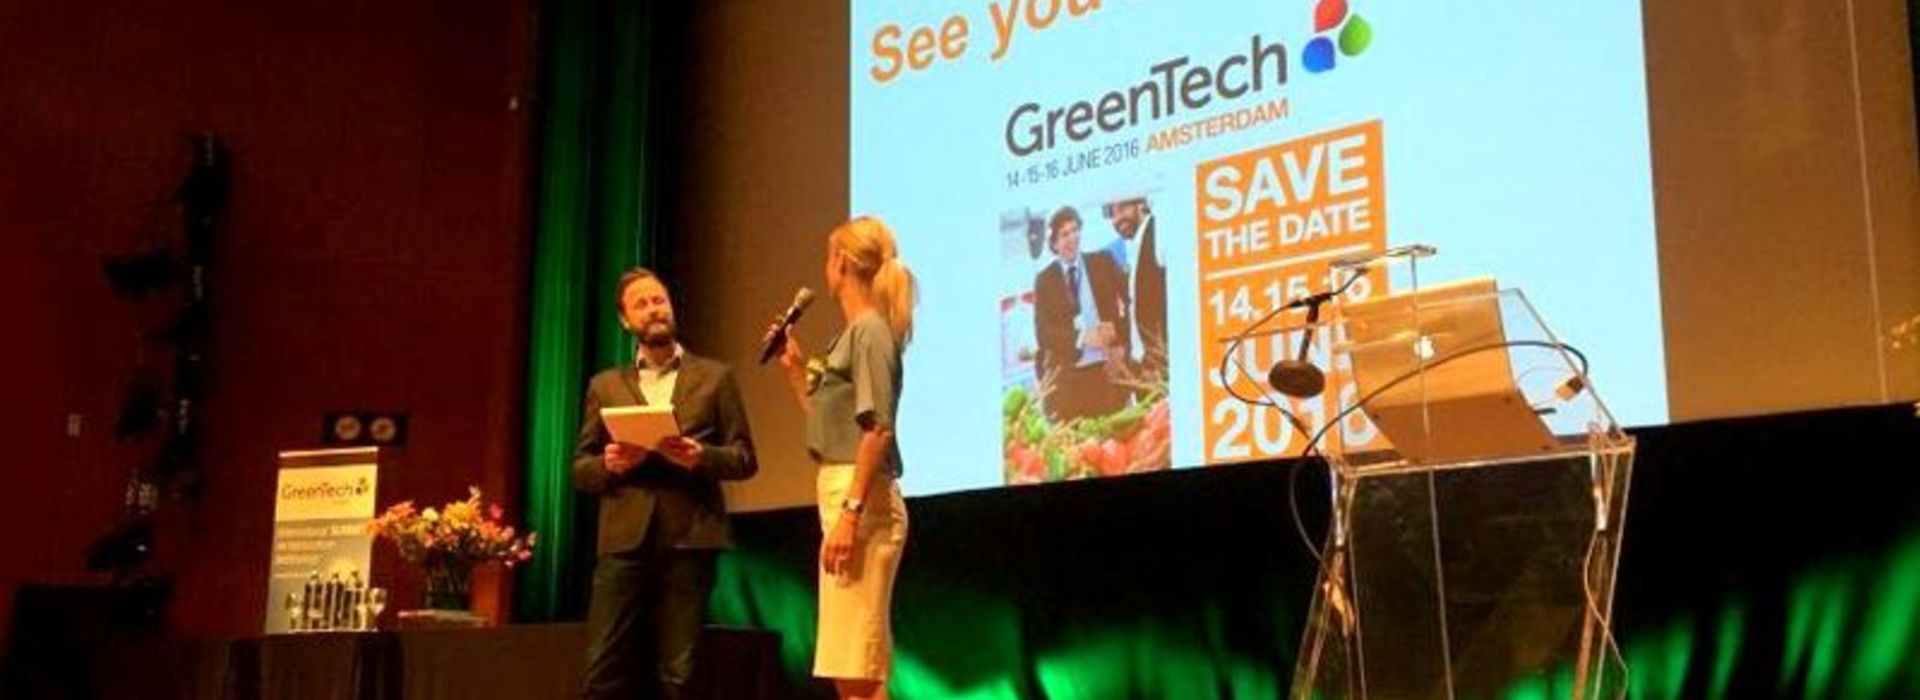 RAI Amsterdam: Greentech Summit 2015